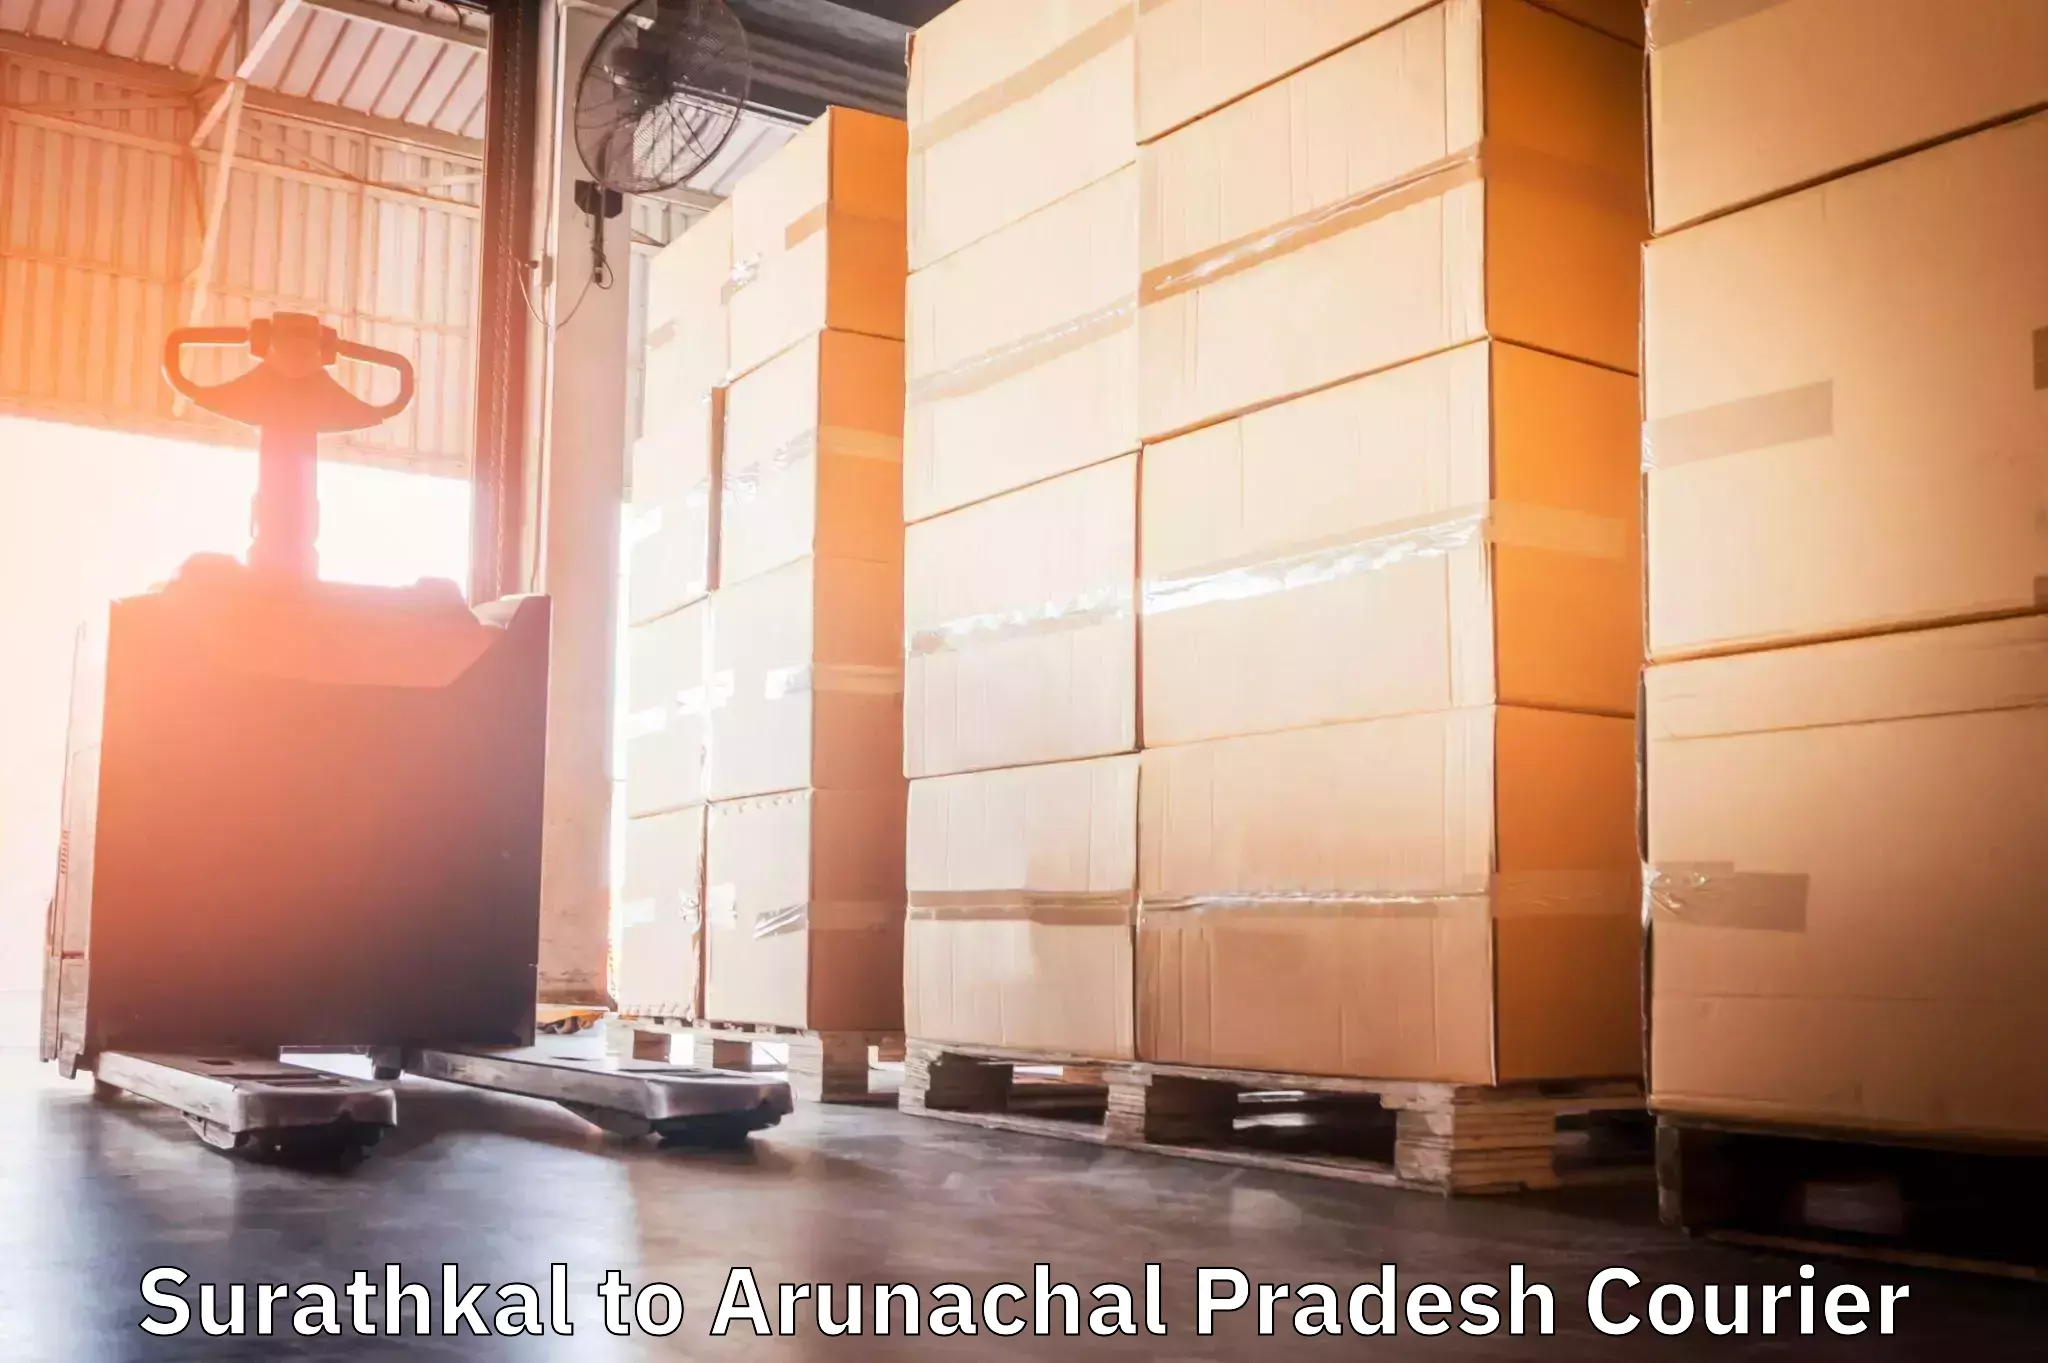 Efficient shipping platforms in Surathkal to Arunachal Pradesh